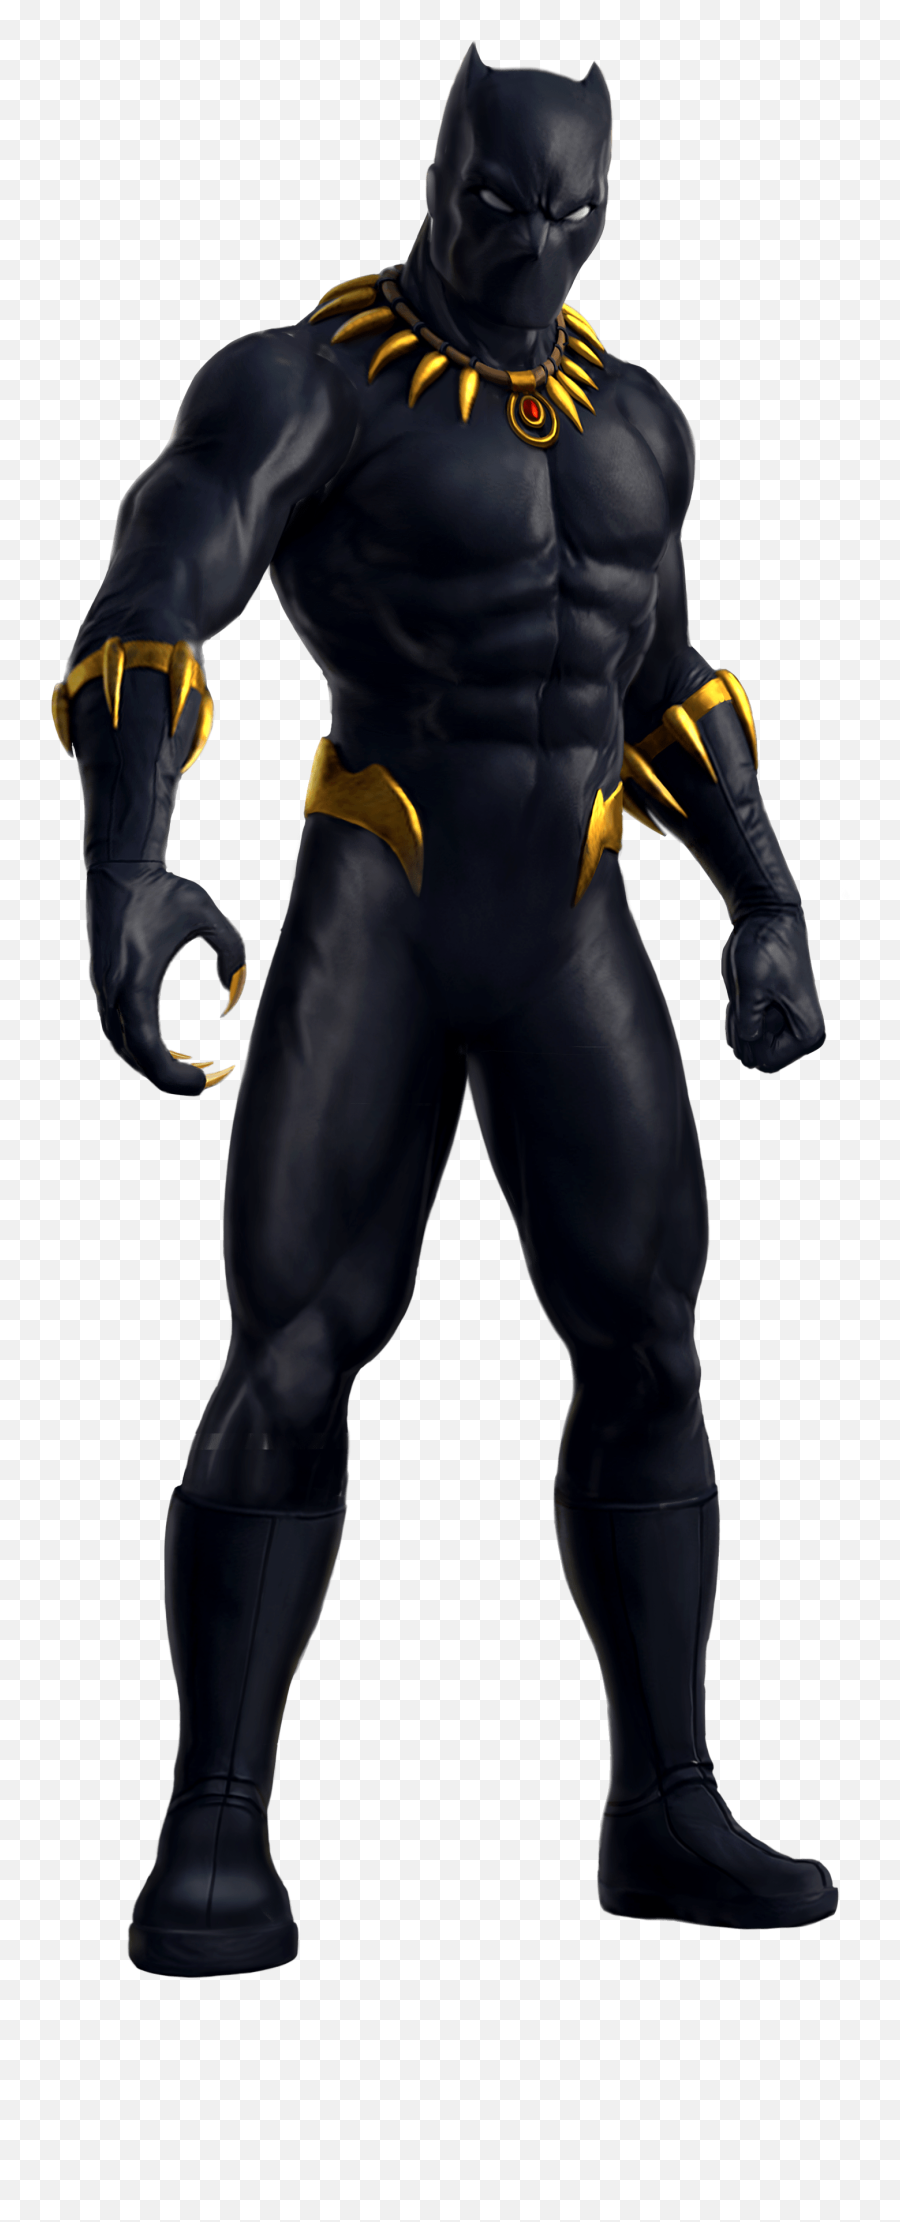 Black Panther Superhero Hulk Wakanda Png Transparent